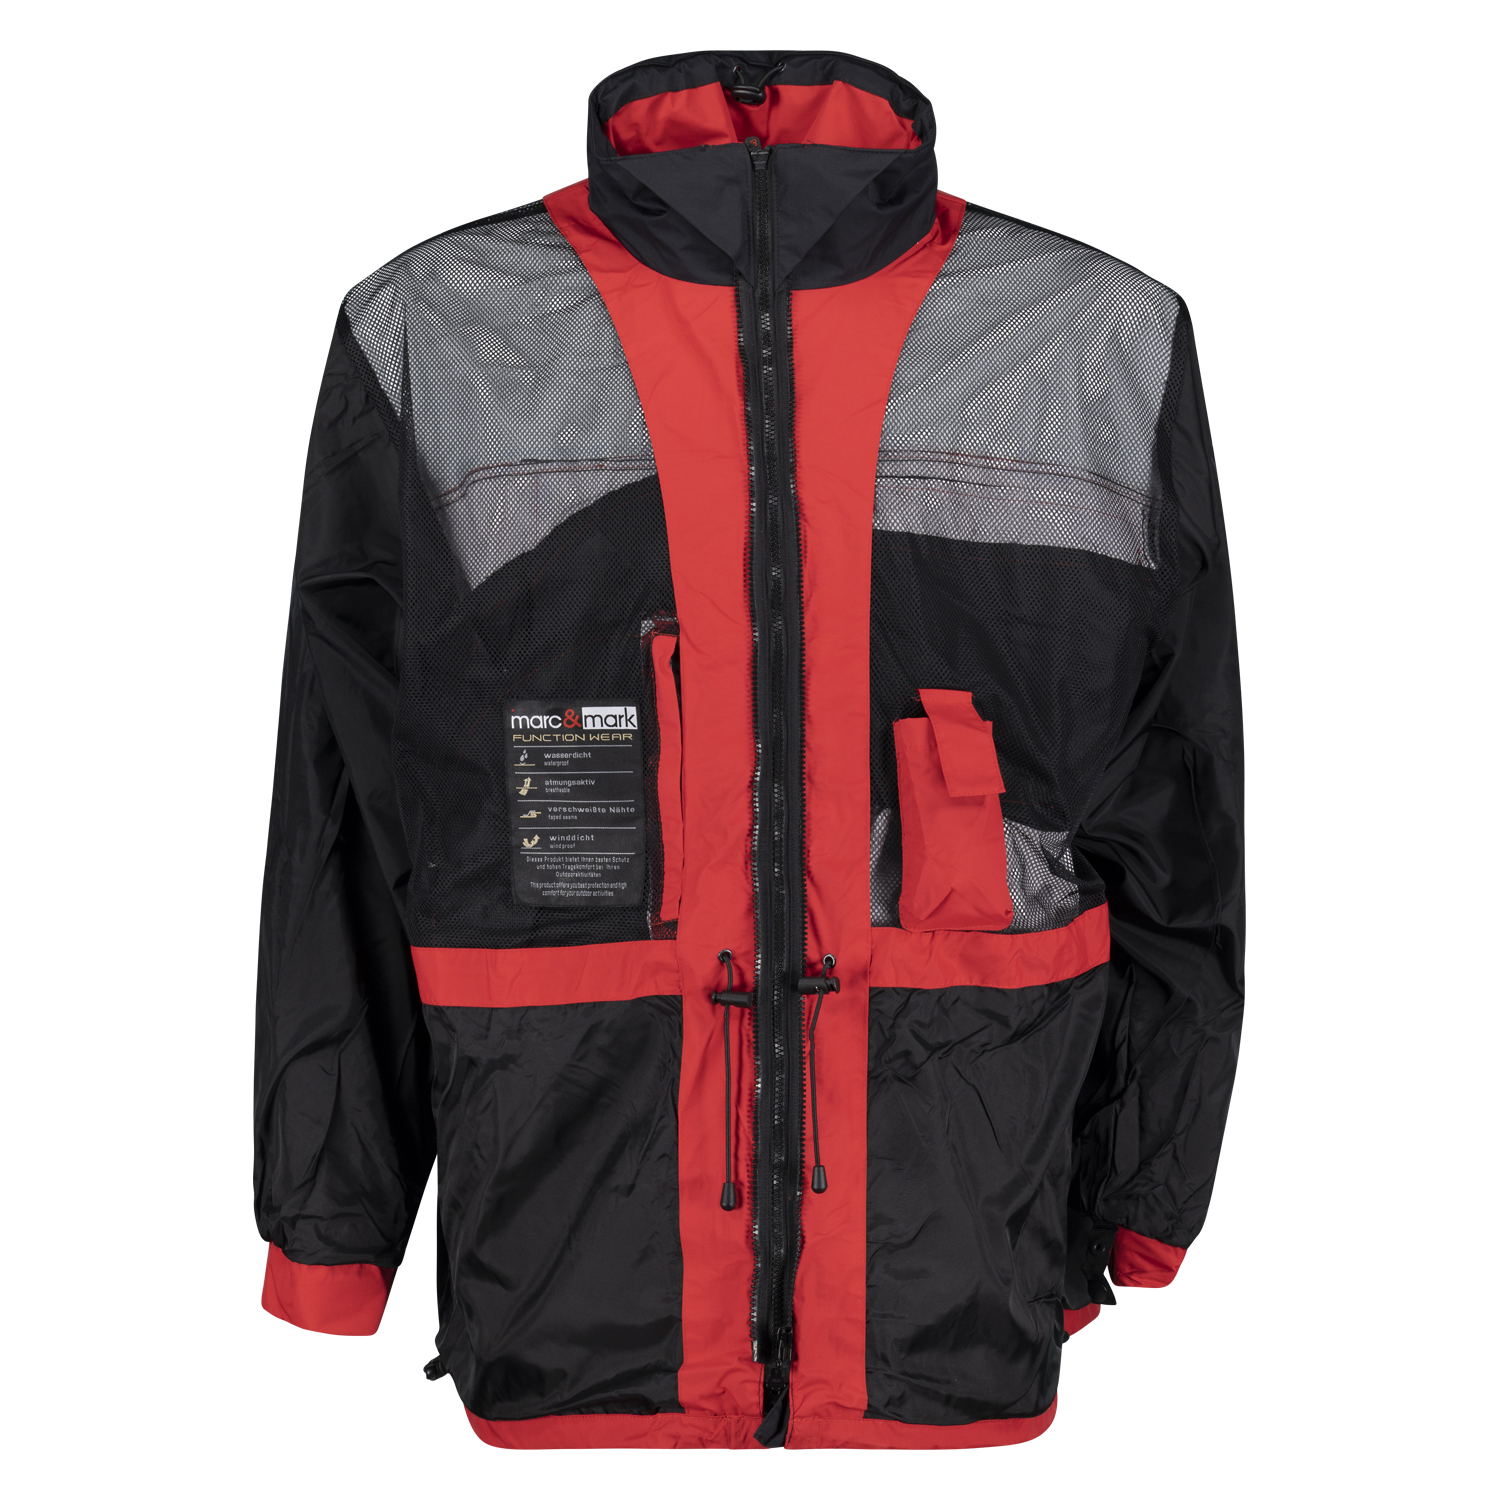 Rote 3in1 Jacke von marc&mark in großen Größen bis 10 XL